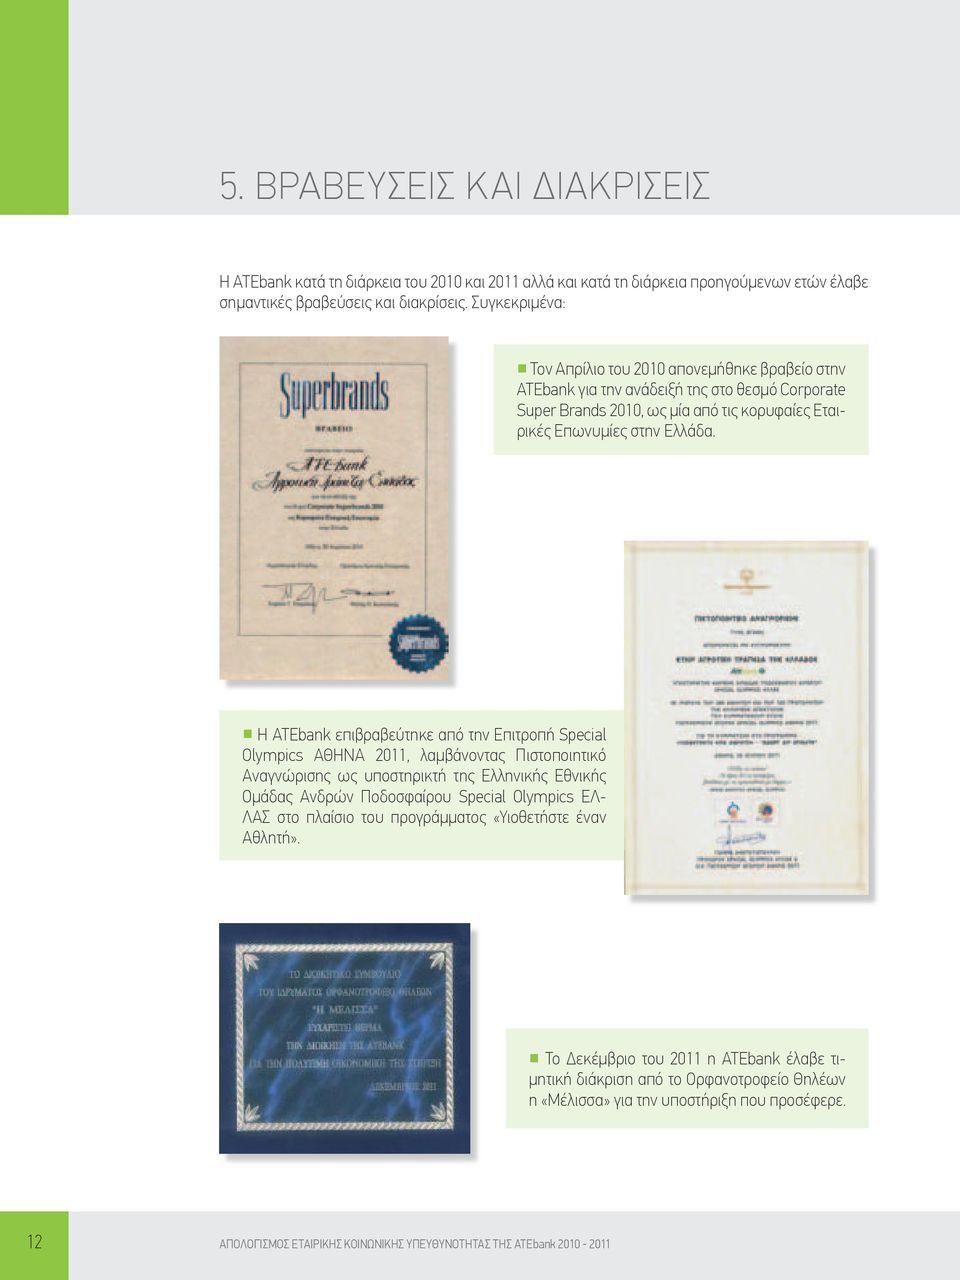 Η ΑΤΕbank επιβραβεύτηκε από την Επιτροπή Special Olympics ΑΘΗΝΑ 2011, λαμβάνοντας Πιστοποιητικό Αναγνώρισης ως υποστηρικτή της Ελληνικής Εθνικής Ομάδας Ανδρών Ποδοσφαίρου Special Olympics ΕΛ- ΛΑΣ στο